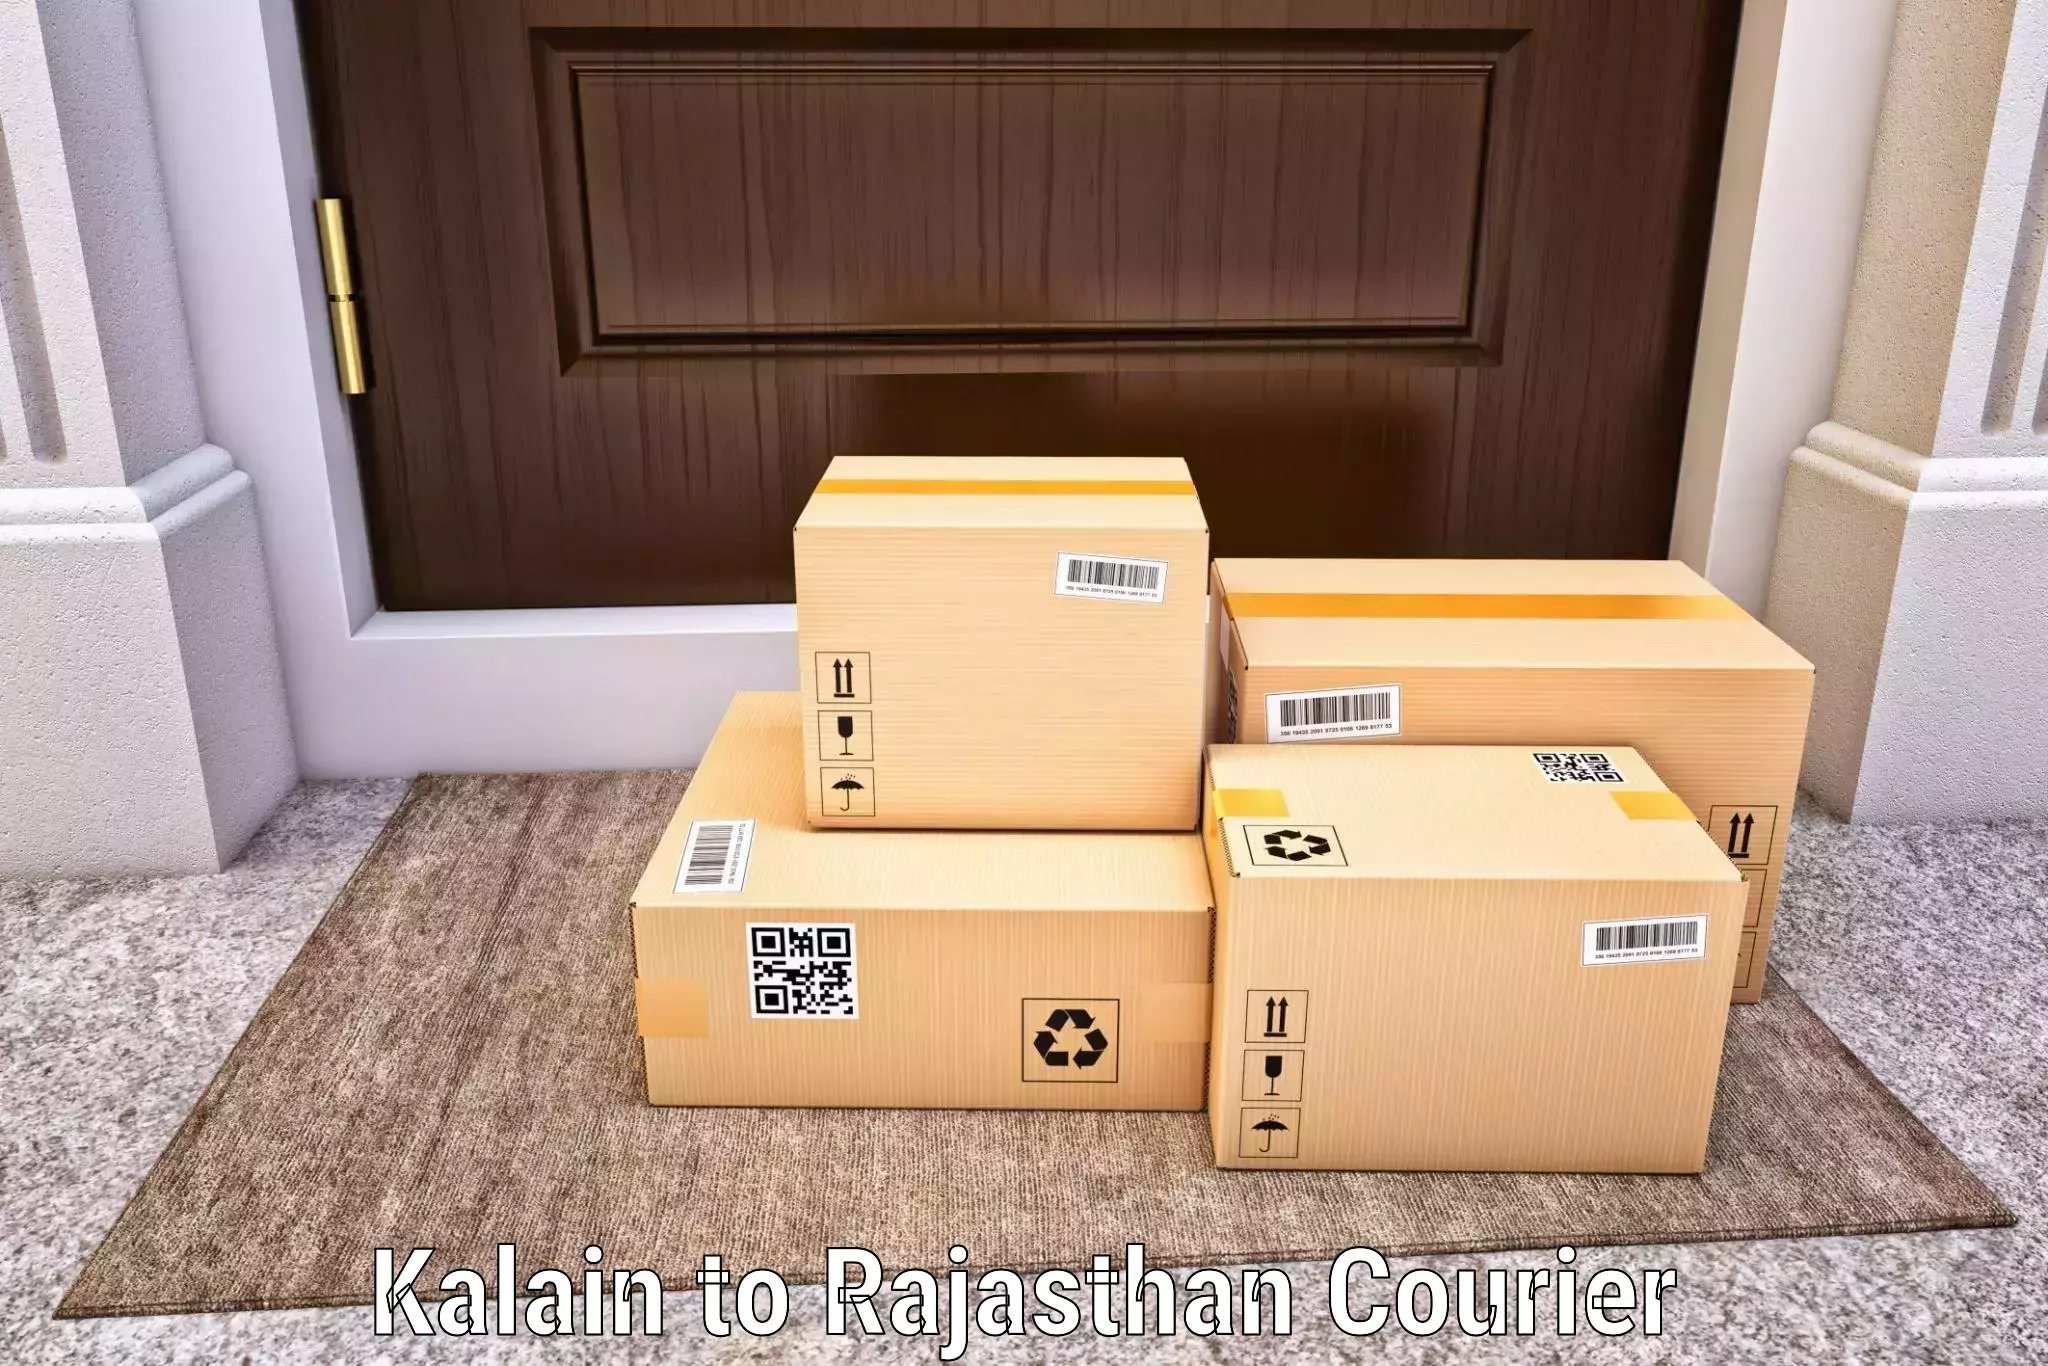 Express logistics service Kalain to Jojawar